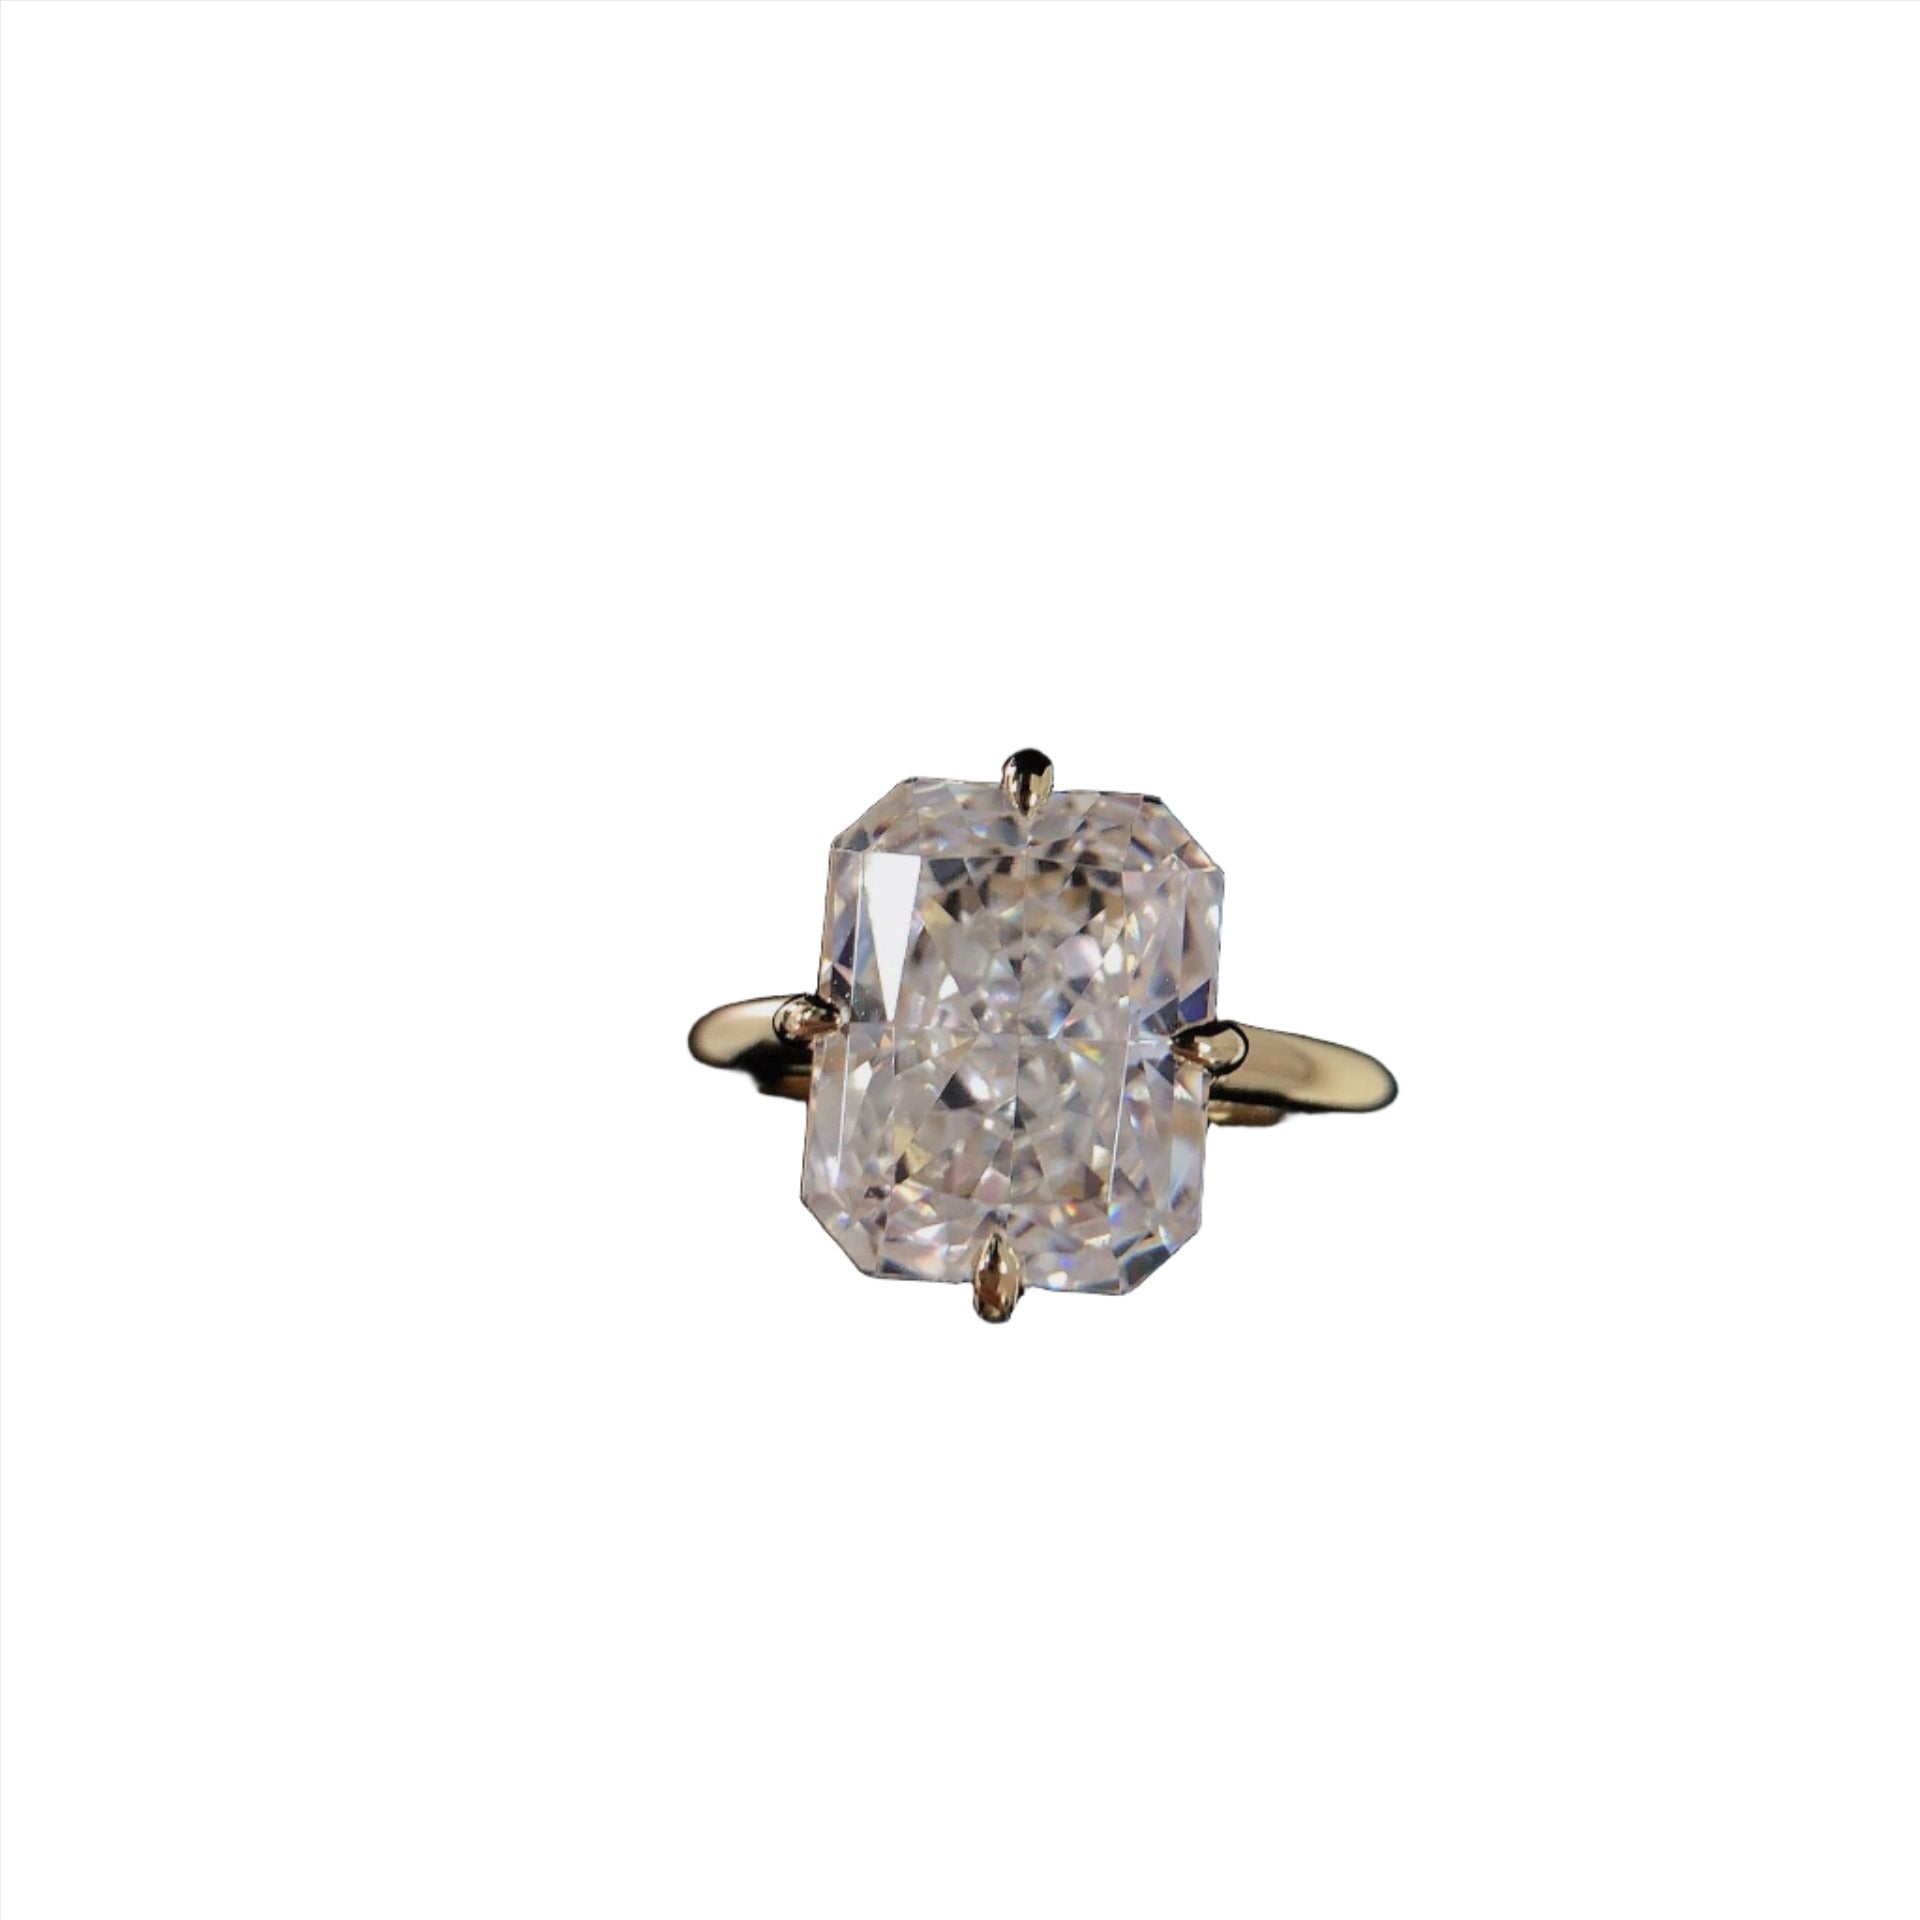 VogueFlo Radiant Square Diamond Engagement Ring - VogueFlo